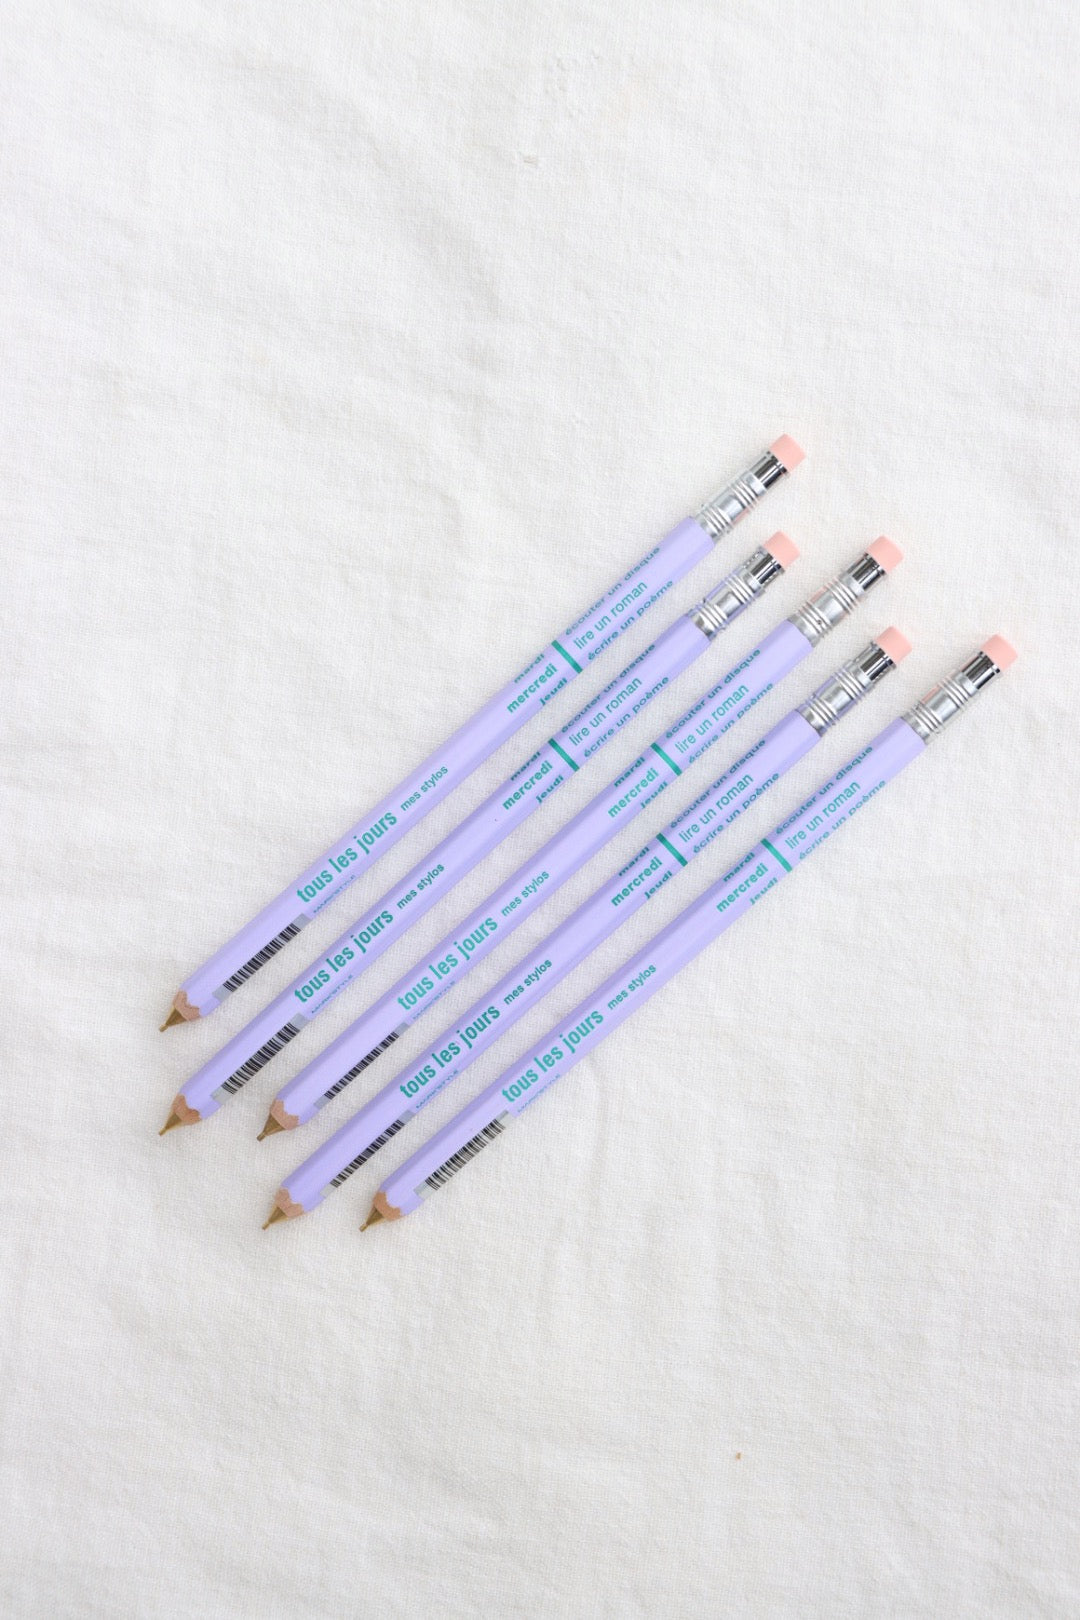 Lavender Tous Les Jours Mechanical Pencil